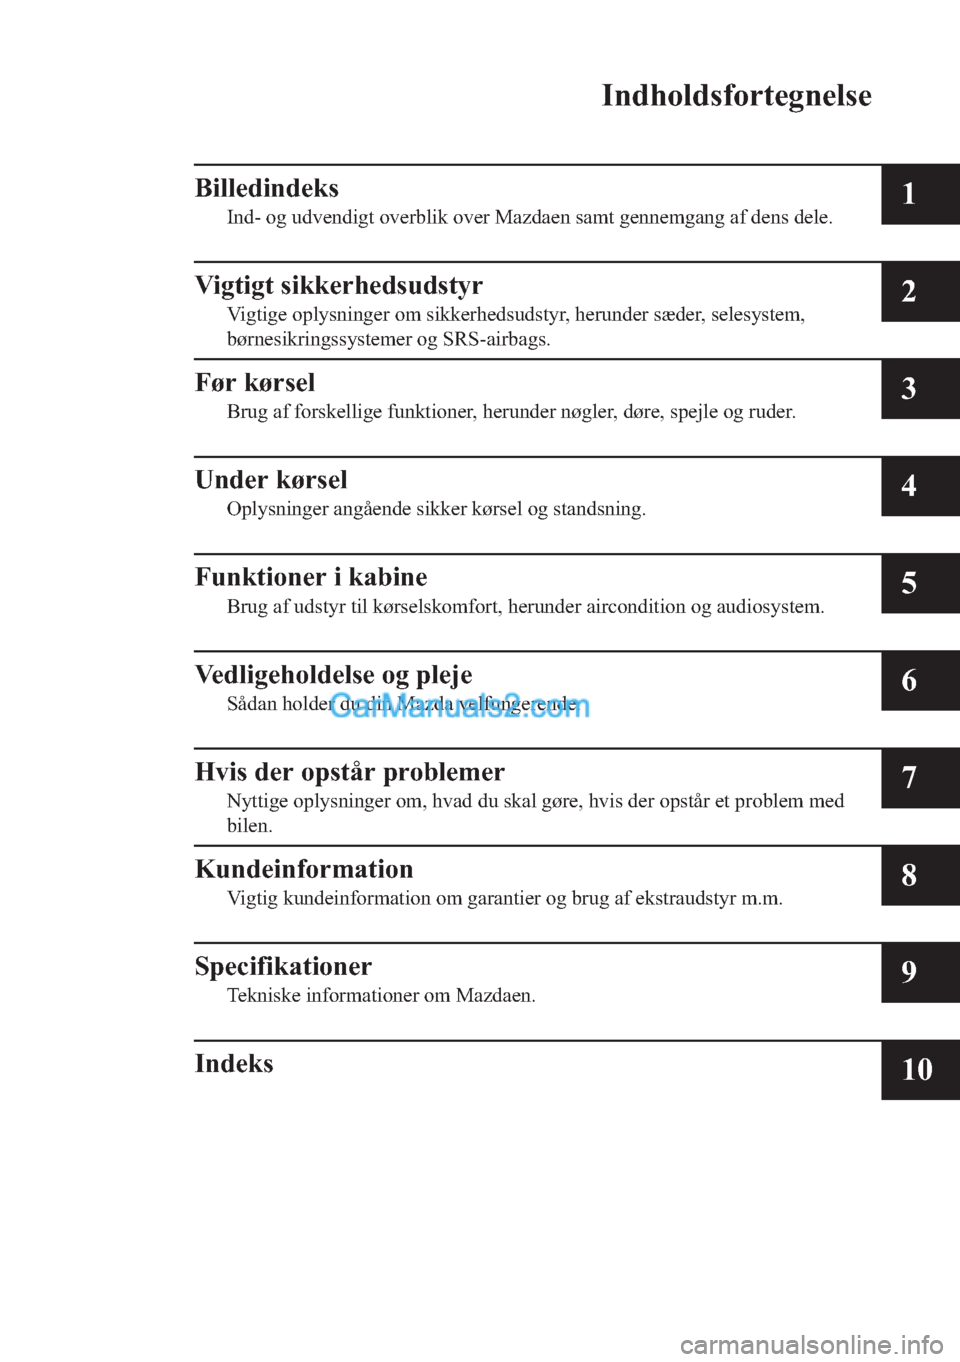 MAZDA MODEL 2 2019  Instruktionsbog (in Danish) �,�Q�G�K�R�O�G�V�I�R�U�W�H�J�Q�H�O�V�H
�%�L�O�O�H�G�L�Q�G�H�N�V
�,�Q�G���R�J��X�G�Y�H�Q�G�L�J�W��R�Y�H�U�E�O�L�N��R�Y�H�U��0�D�]�G�D�H�Q��V�D�P�W��J�H�Q�Q�H�P�J�D�Q�J��D�I��G�H�Q�V��G�H�O�H